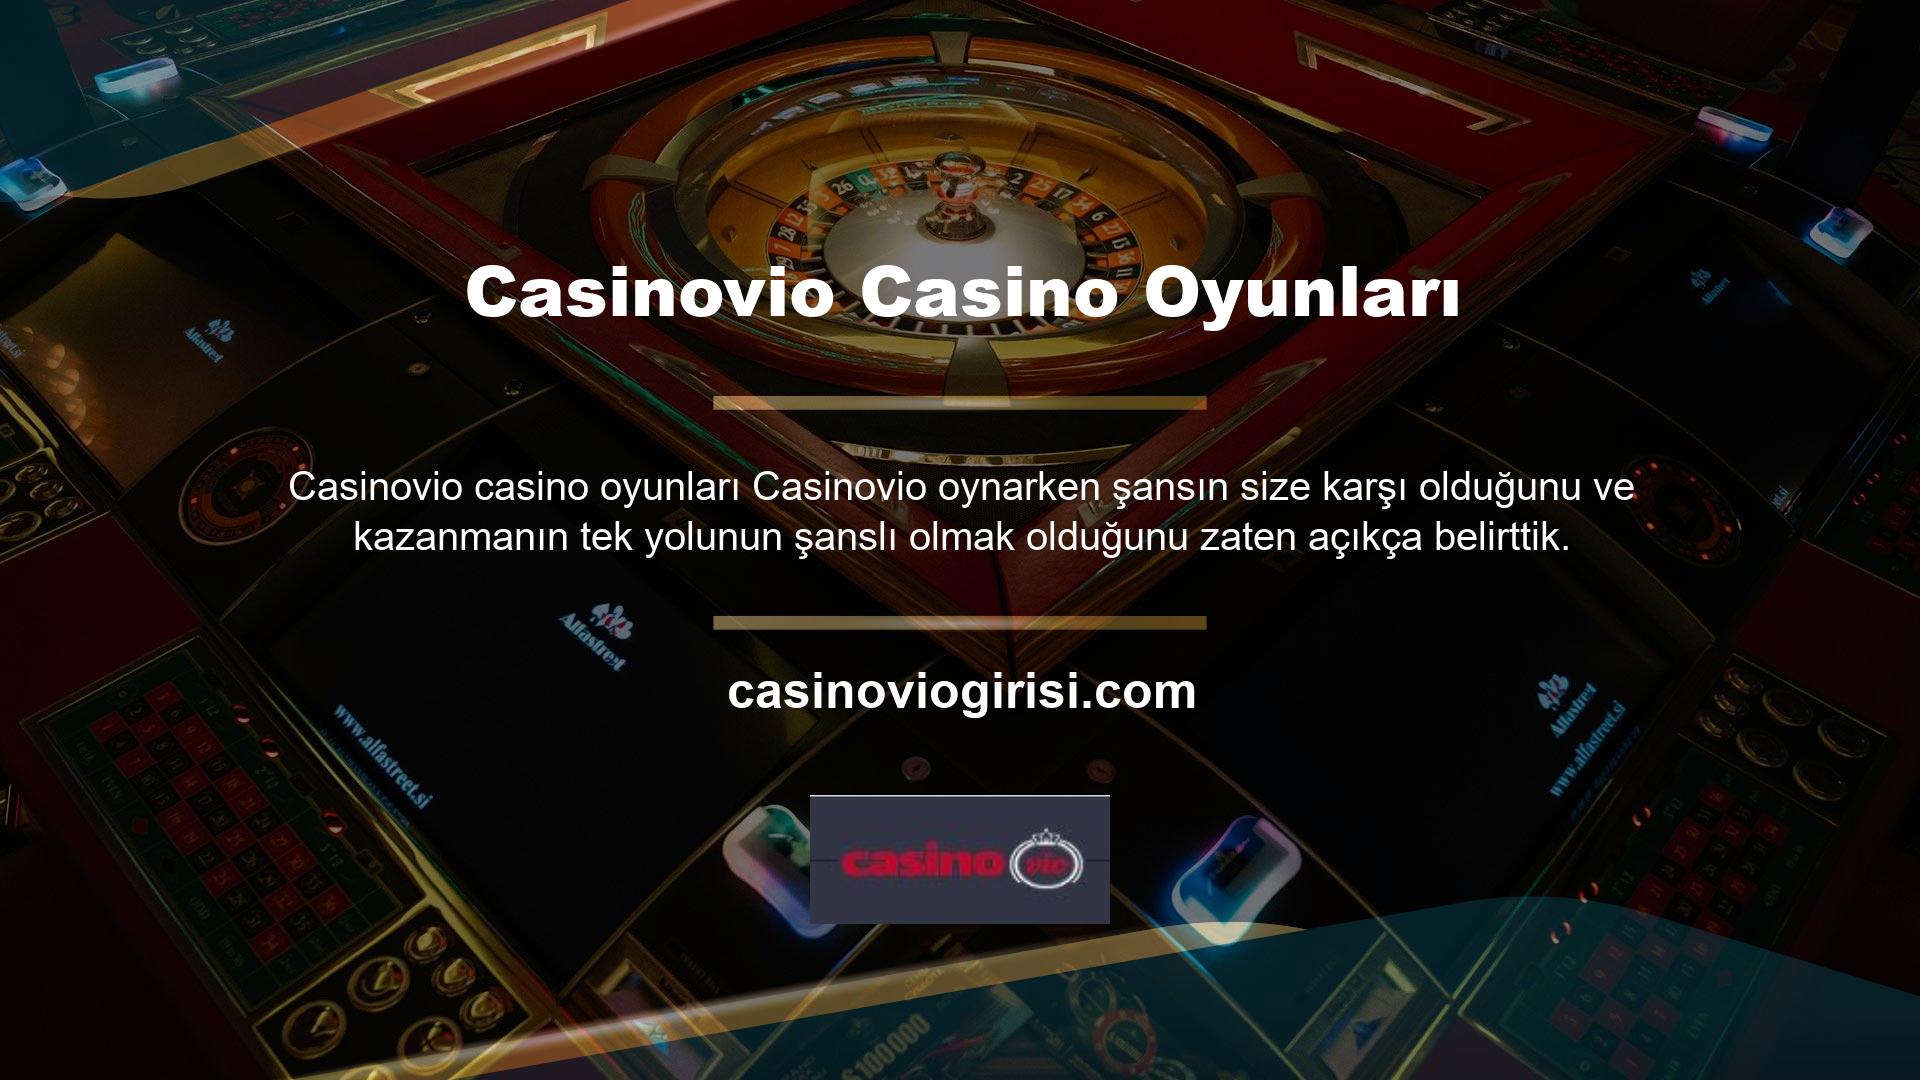 Ancak, tüm casinoların yalnızca şansa dayalı olduğunu varsaymamalısınız, çünkü durum böyle değil